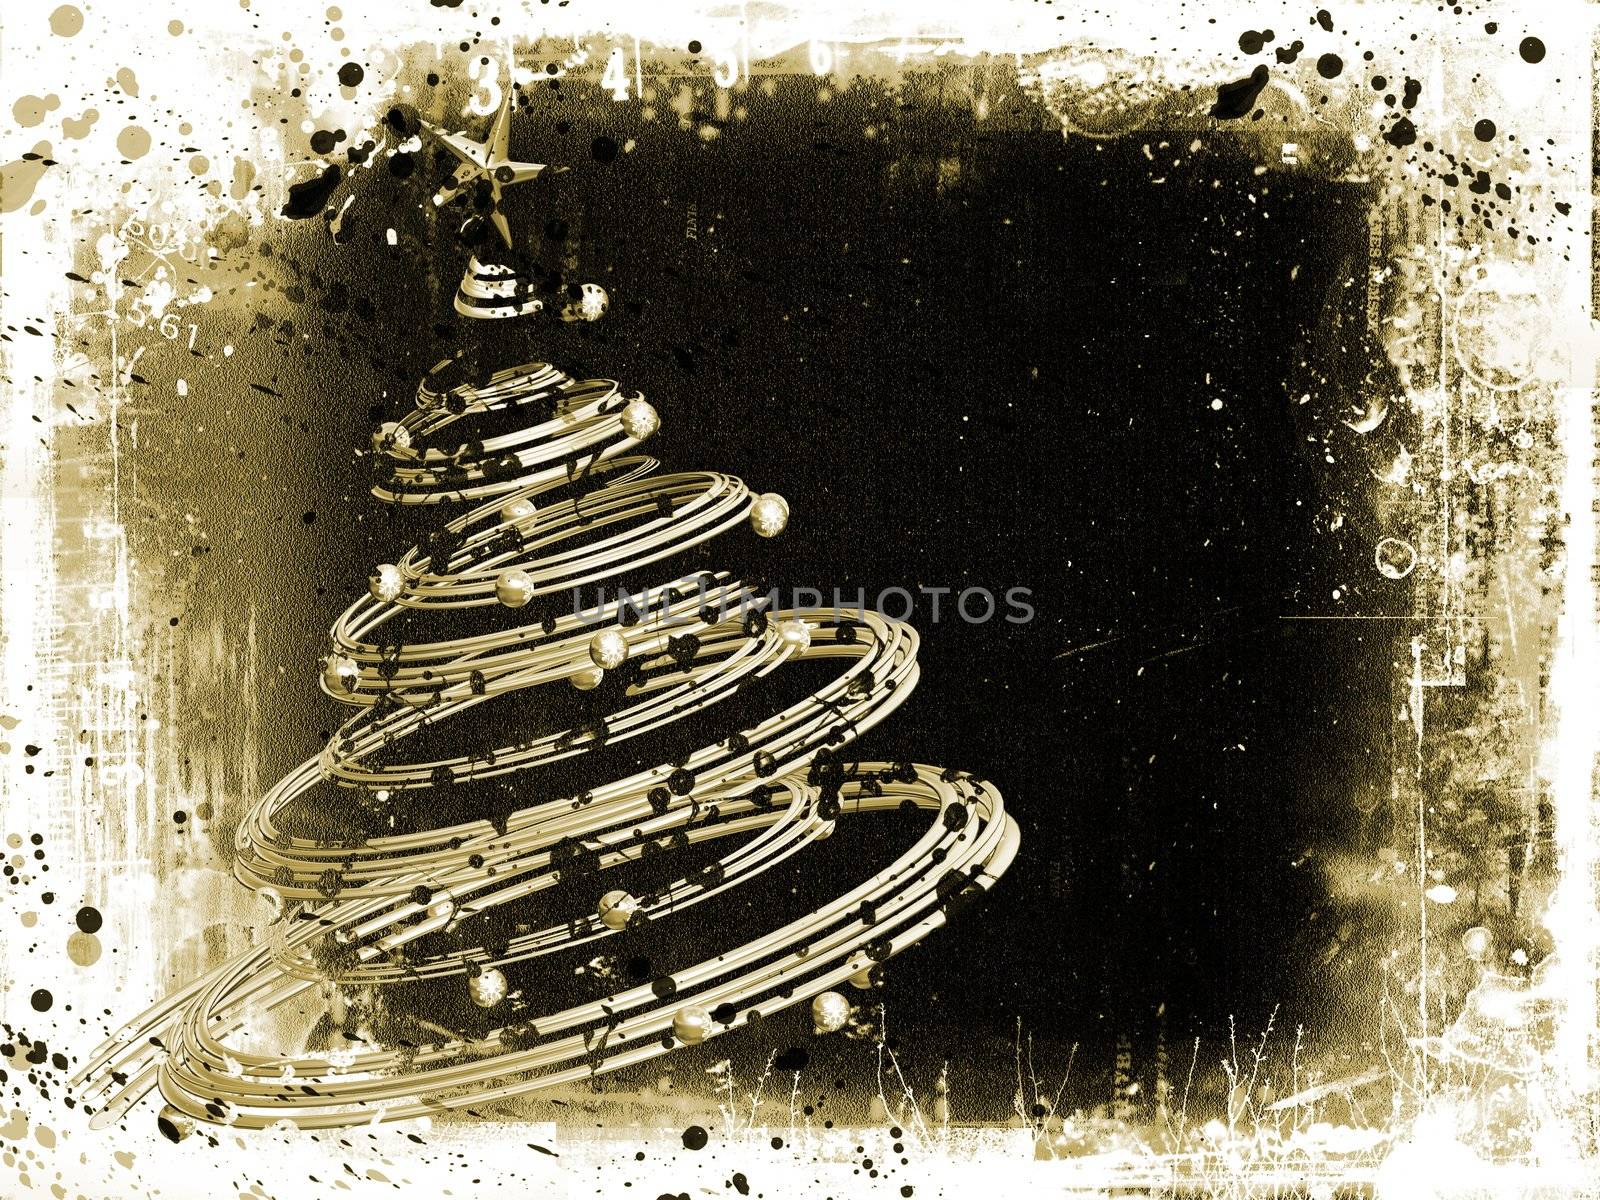 Grunge Christmas tree background
